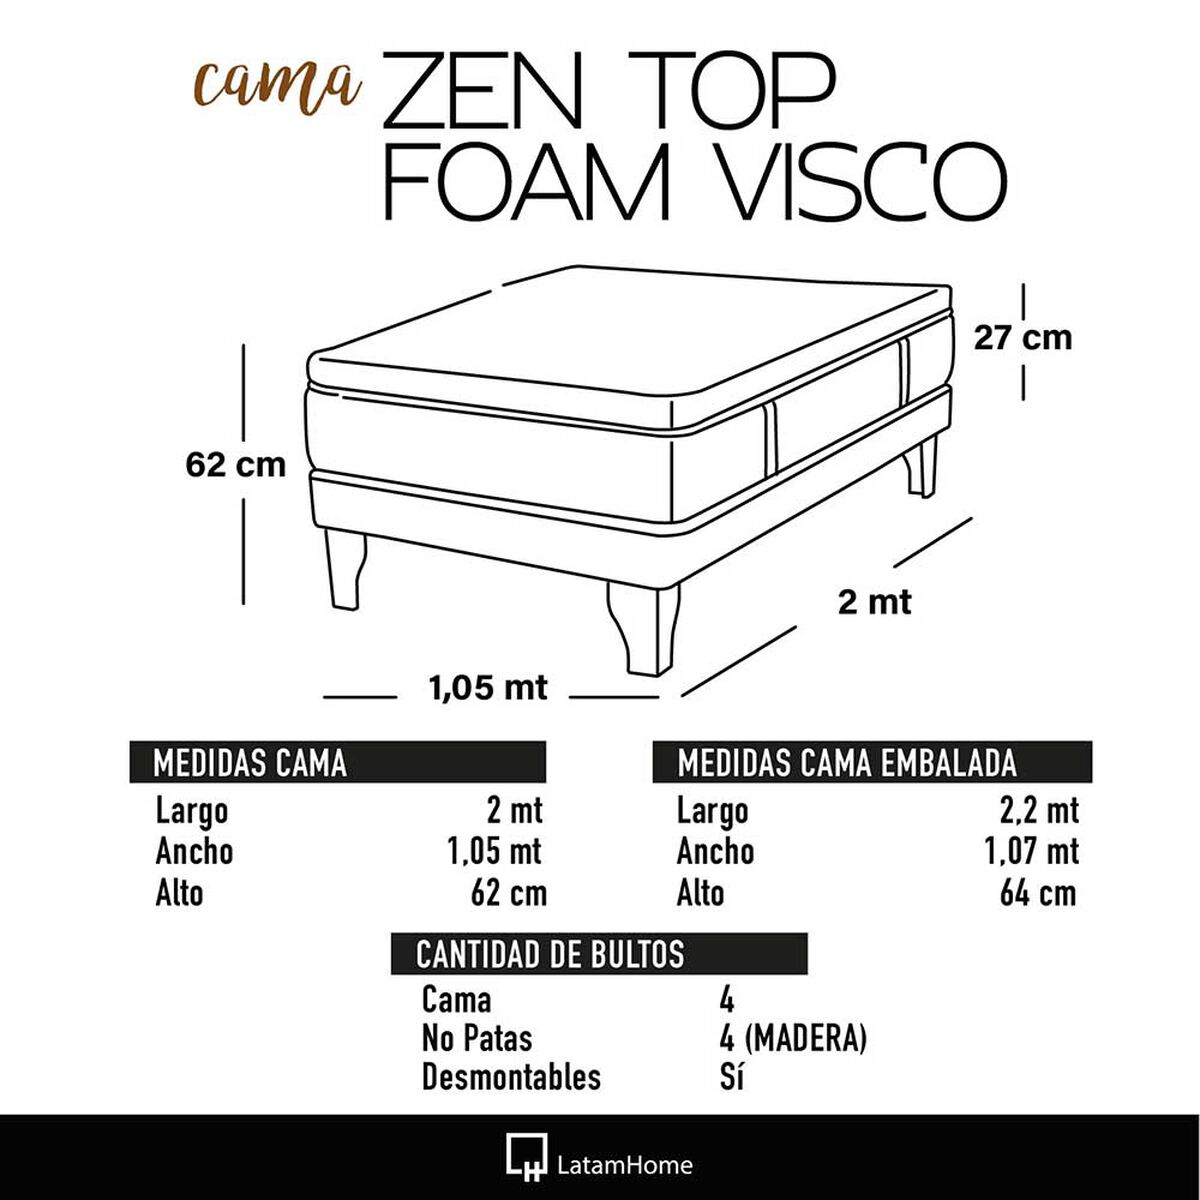 Cama Europea Latam Home 1,5 Plazas Zen Top Foam Visco Velvet Turquesa